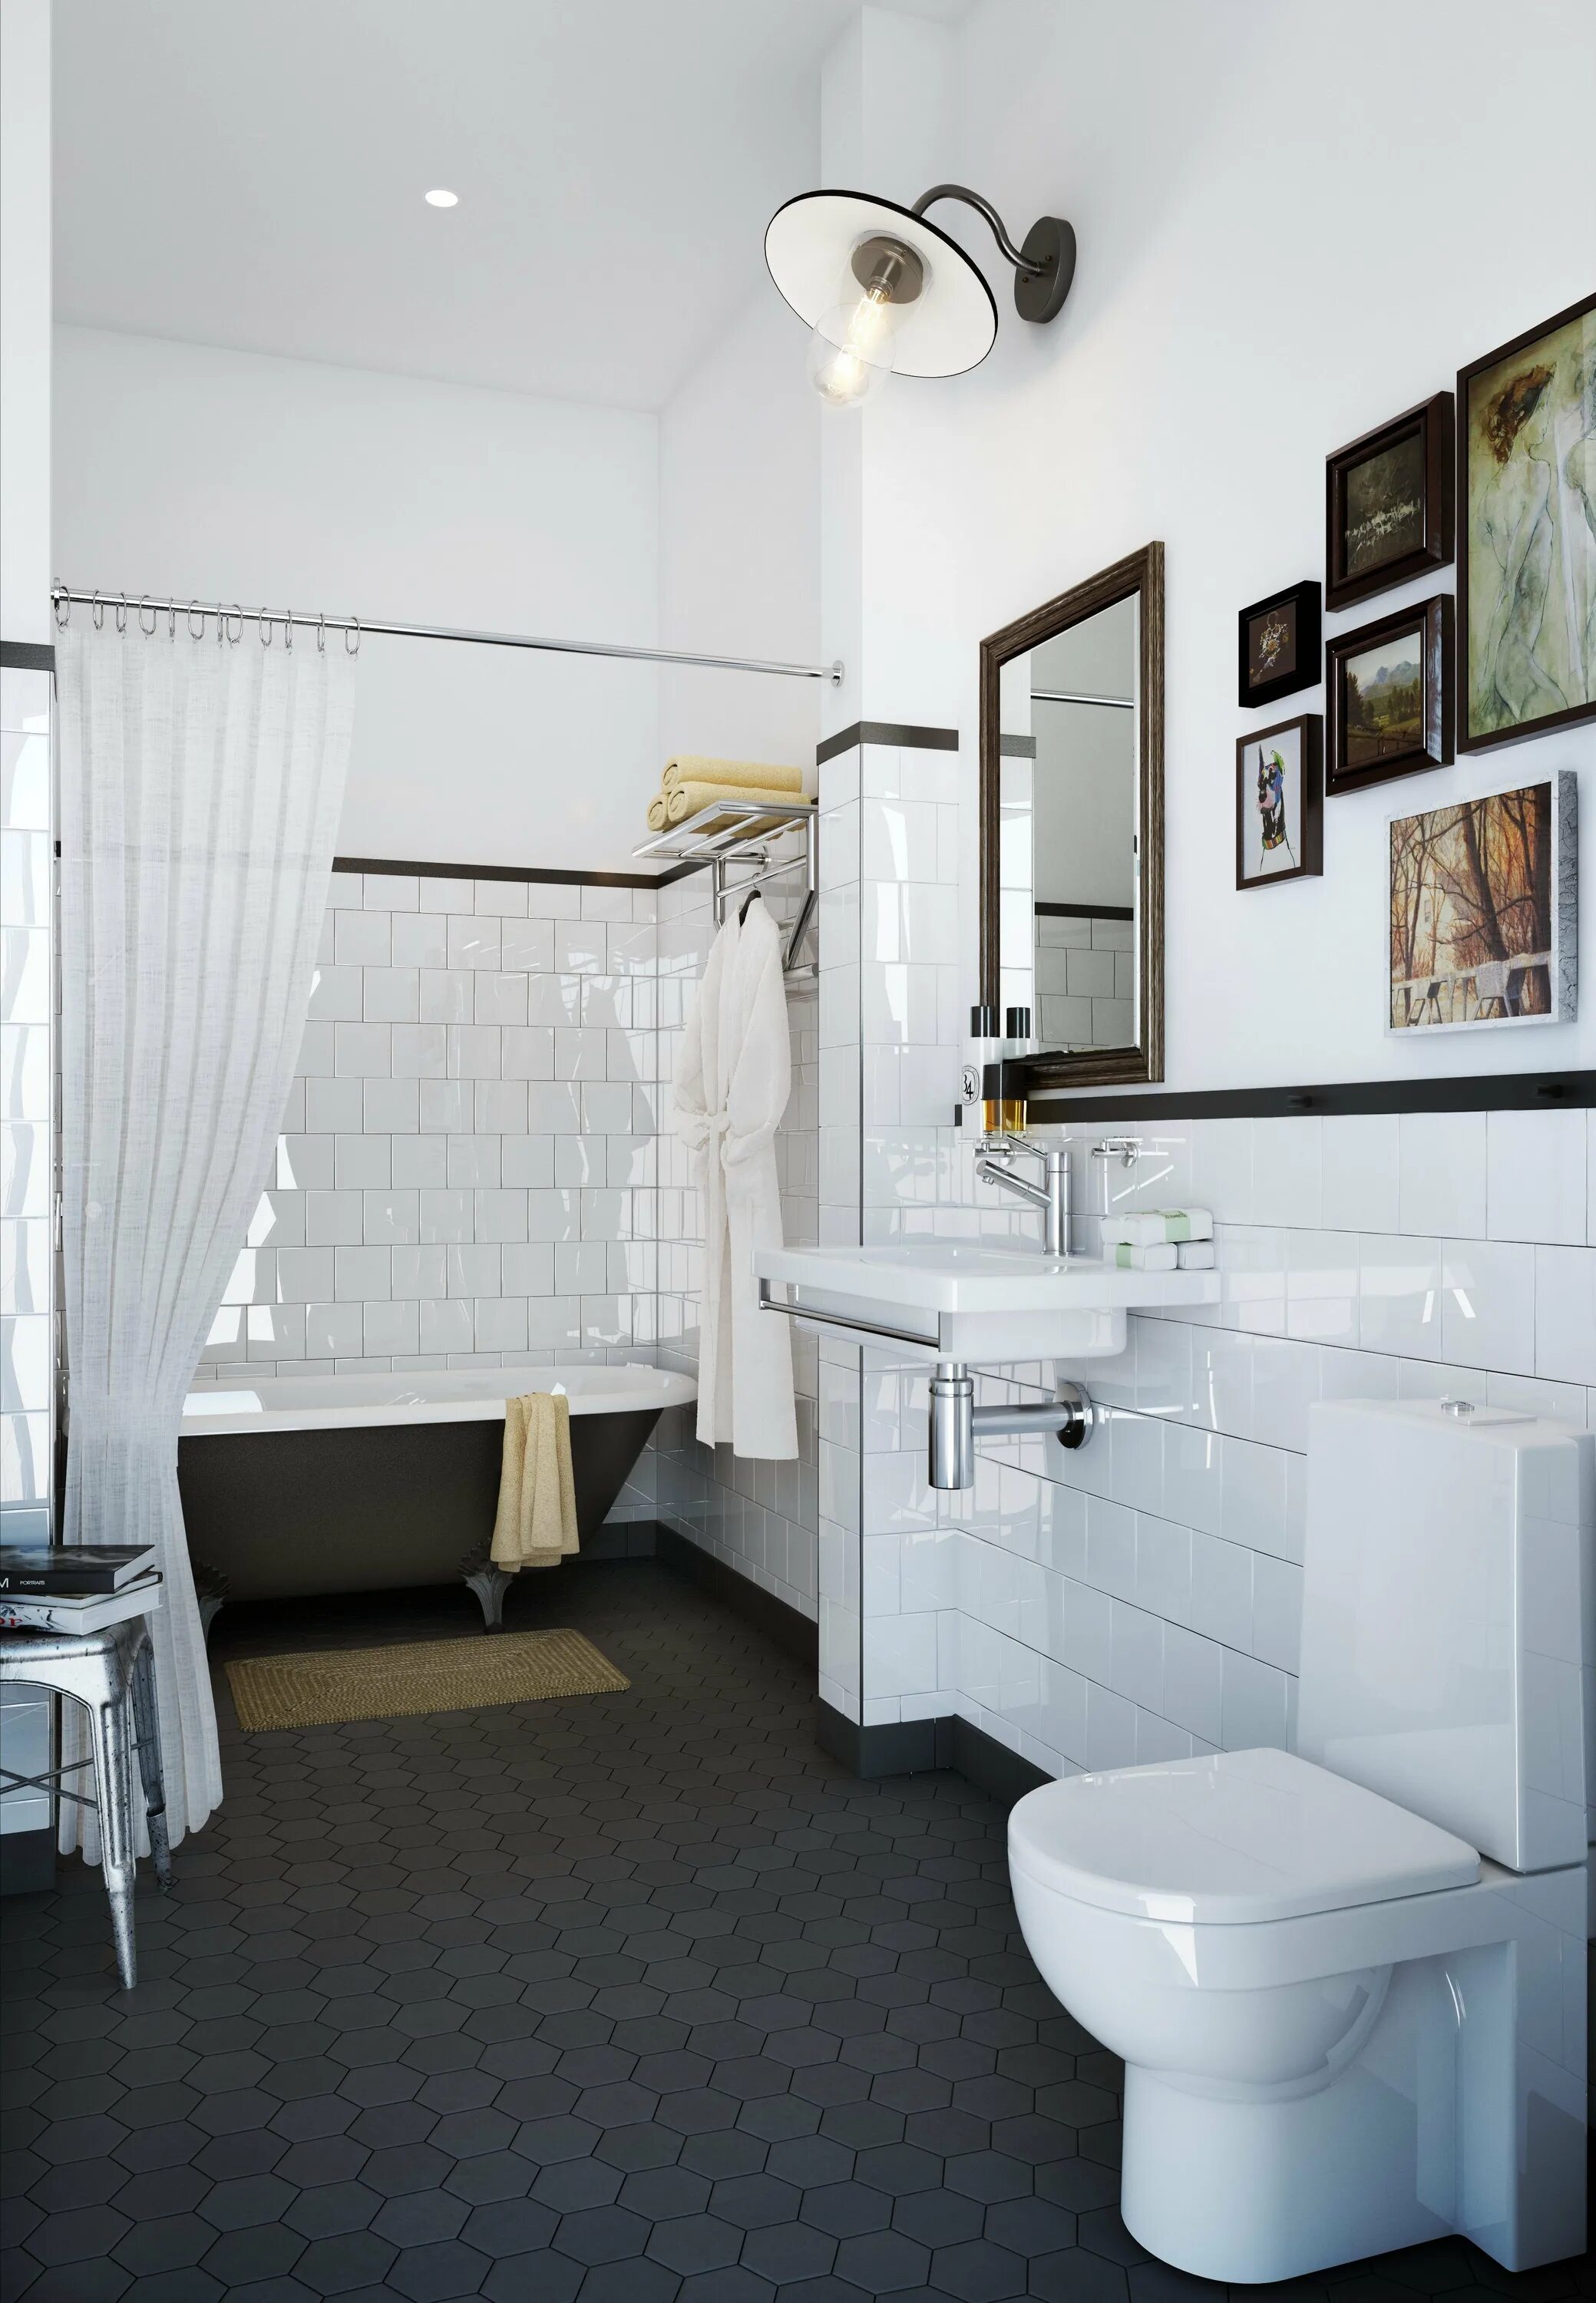 Интерьер санузла. Ванная комната с белыми стенами. Интерьер ванной совмещенной с туалетом. Совмещённый санузел с ванной. Зона ванной комнаты